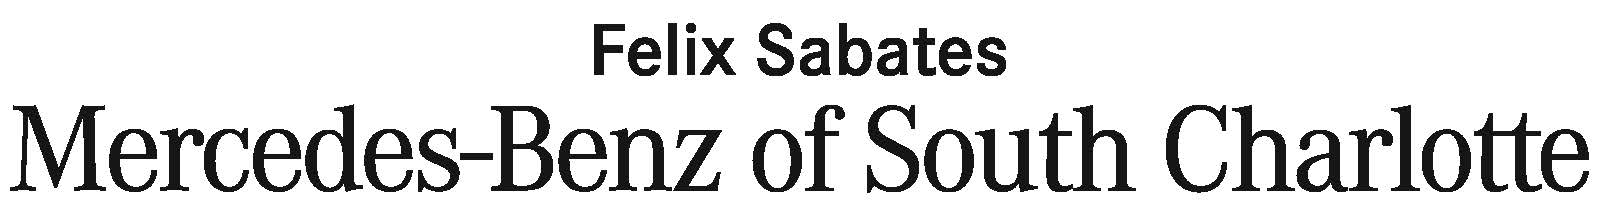 Felix_Sabates_Horz